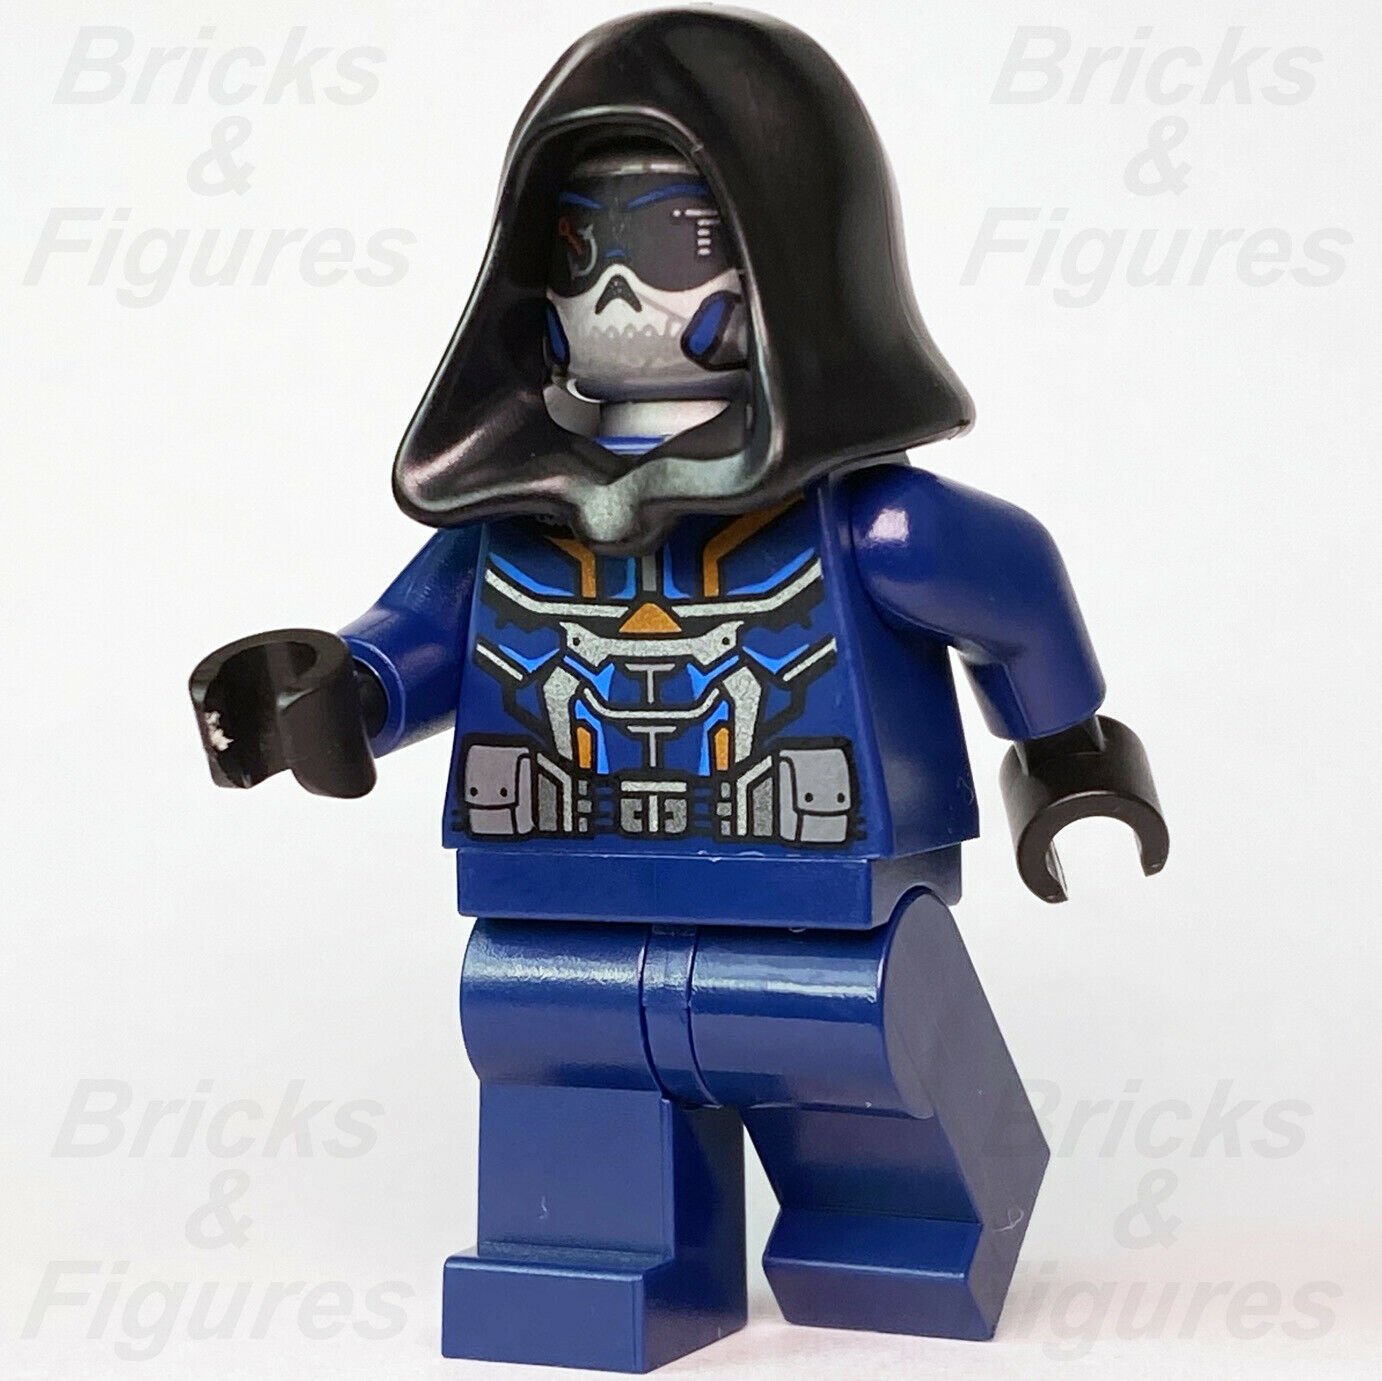 New Marvel Super Heroes LEGO Taskmaster Black Widow Movie Minifigure 76162 - Bricks & Figures